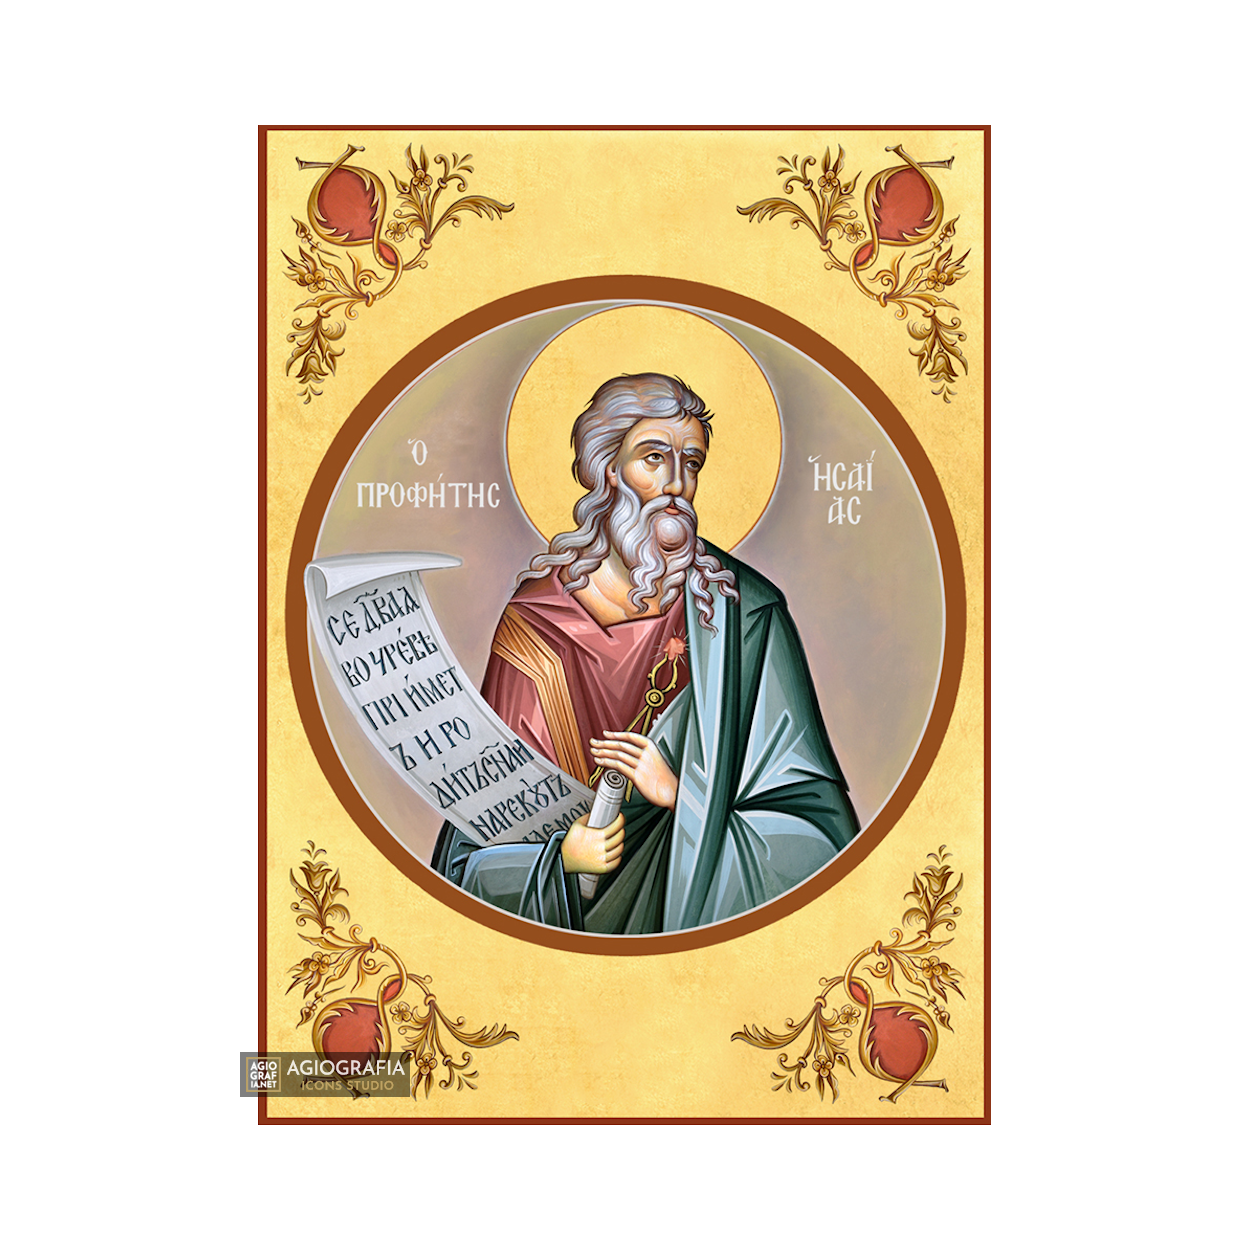 22k Prophet Isaiah - Gold Leaf Background Christian Orthodox Icon